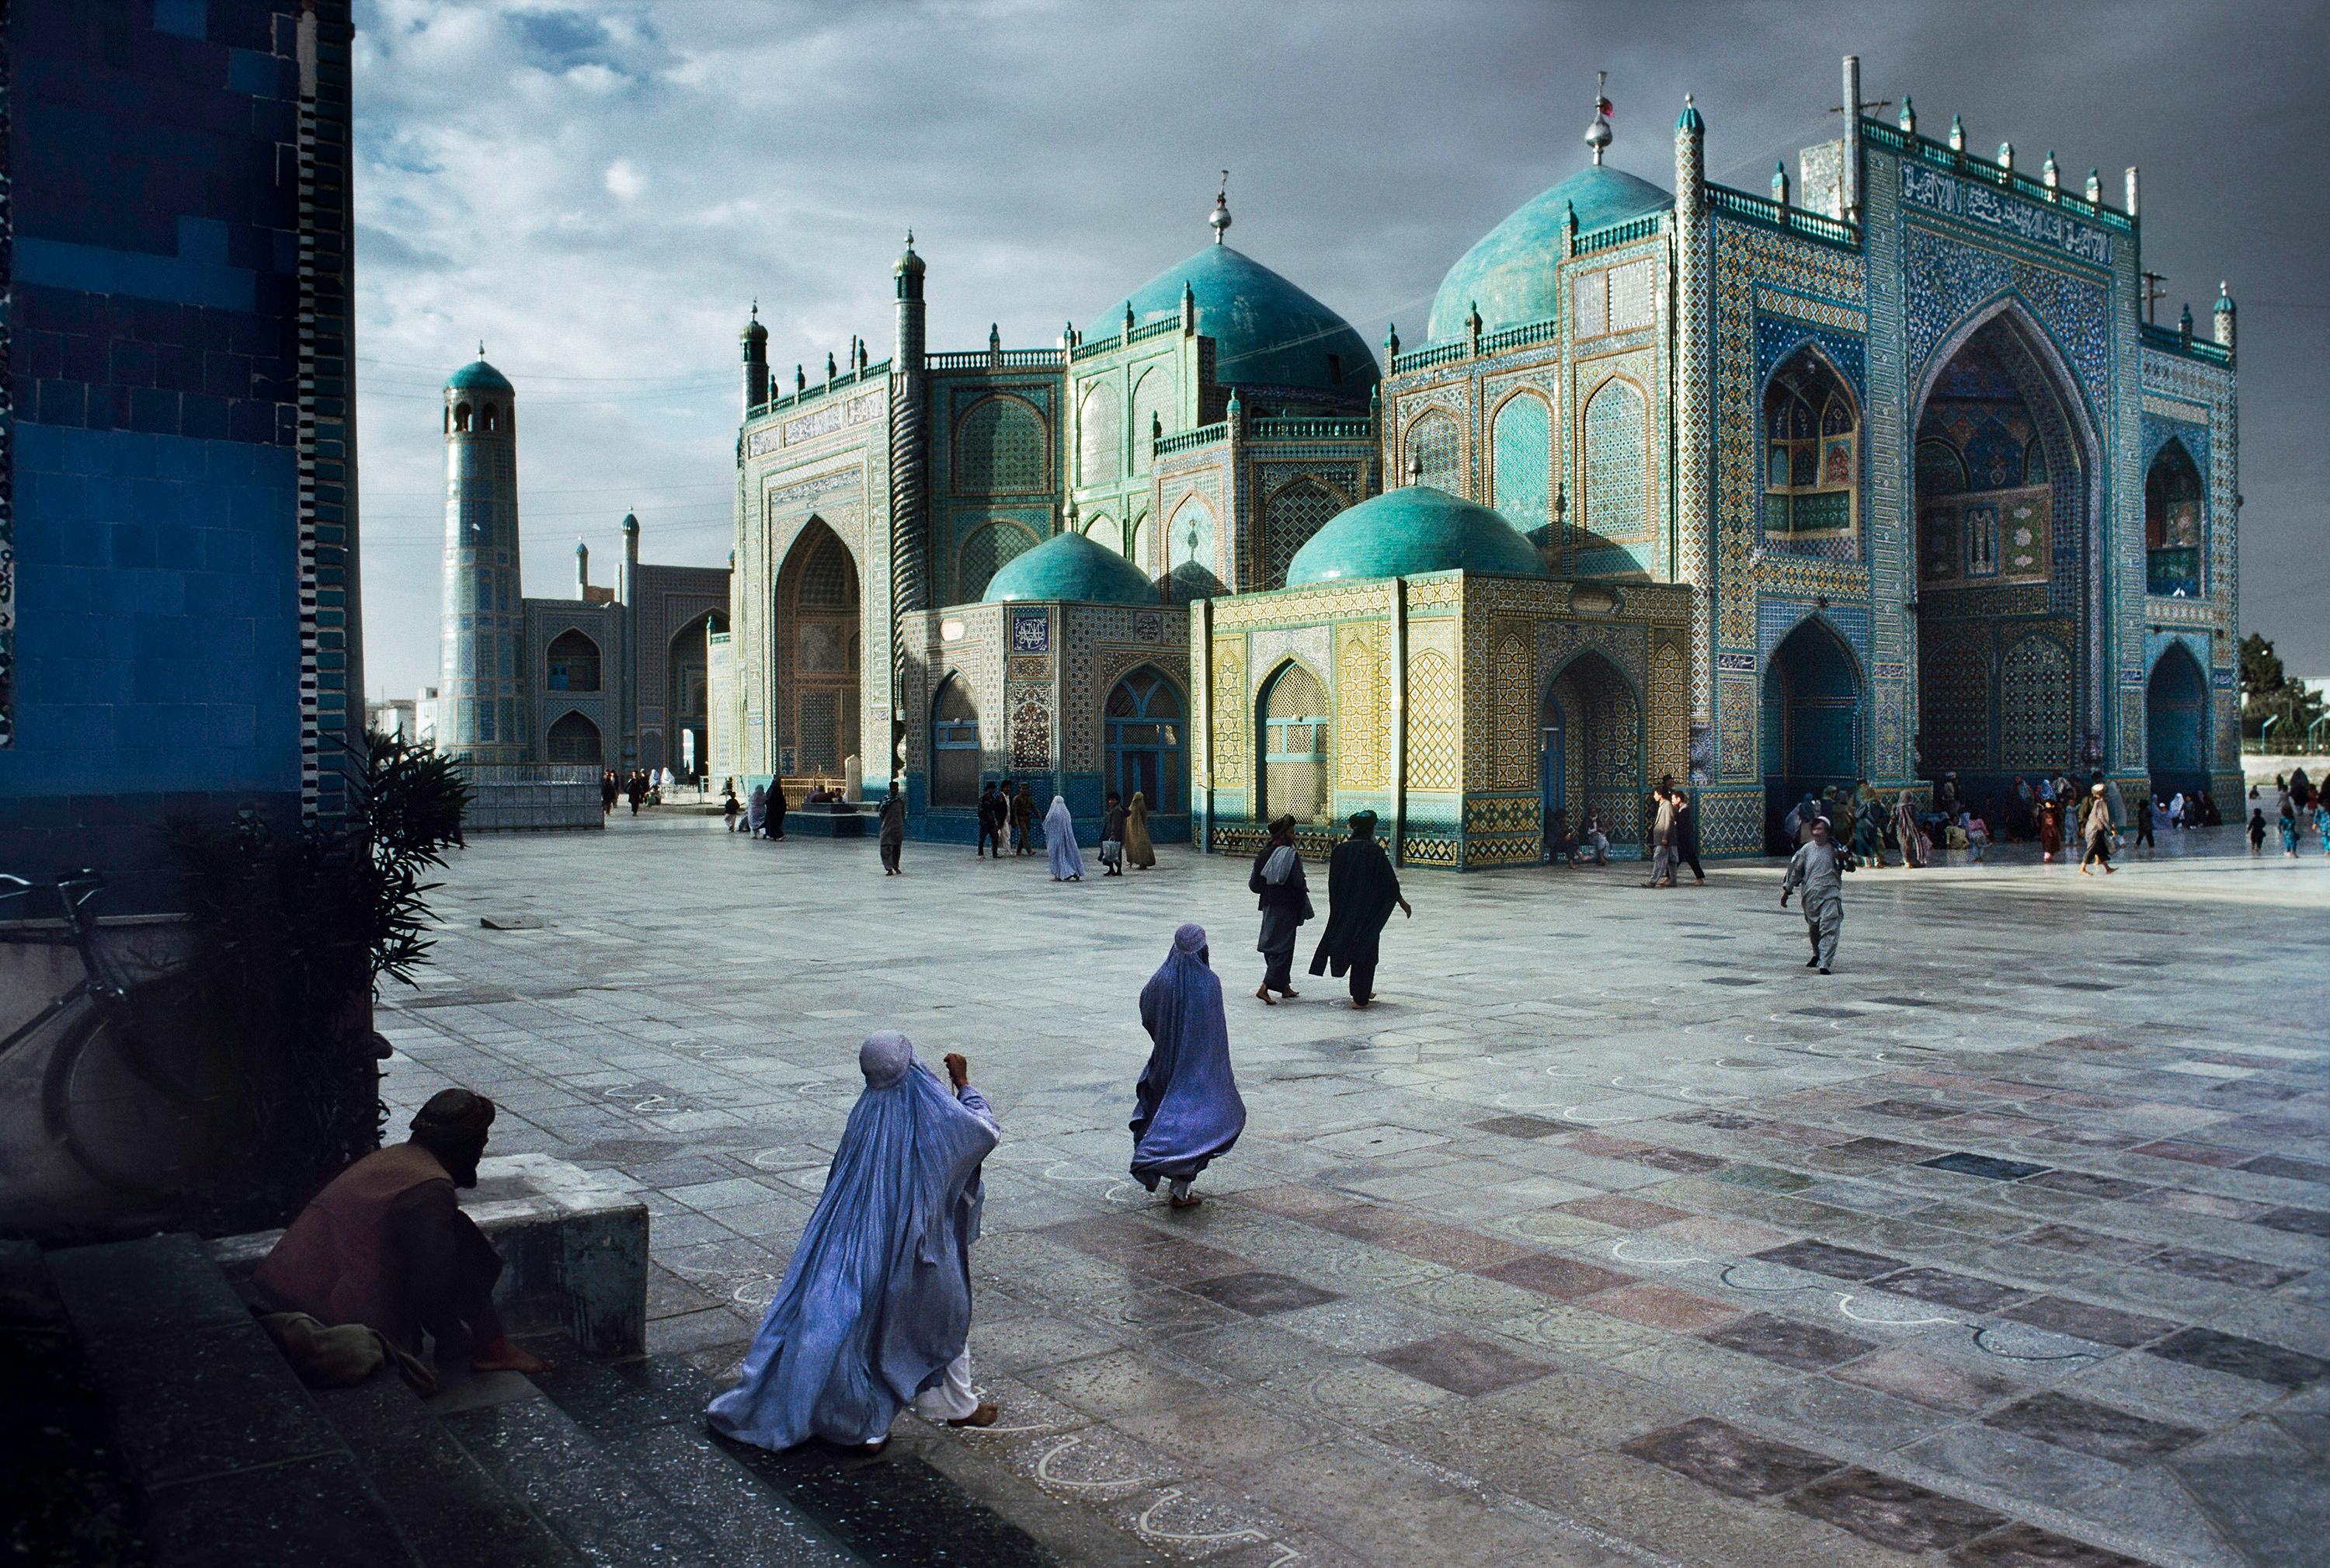 Salat in Blue Mosque in Mazar-E-Sharif, 1992 – Steve McCurry (Farbfotografie)
Signiert, mit dem Label der Künstleredition versehen und auf der Rückseite nummeriert
Digitaler C-Typ-Druck

20 x 24 Zoll, Auflage: 30
30 x 40 Zoll, Auflage: 15
40 x 60